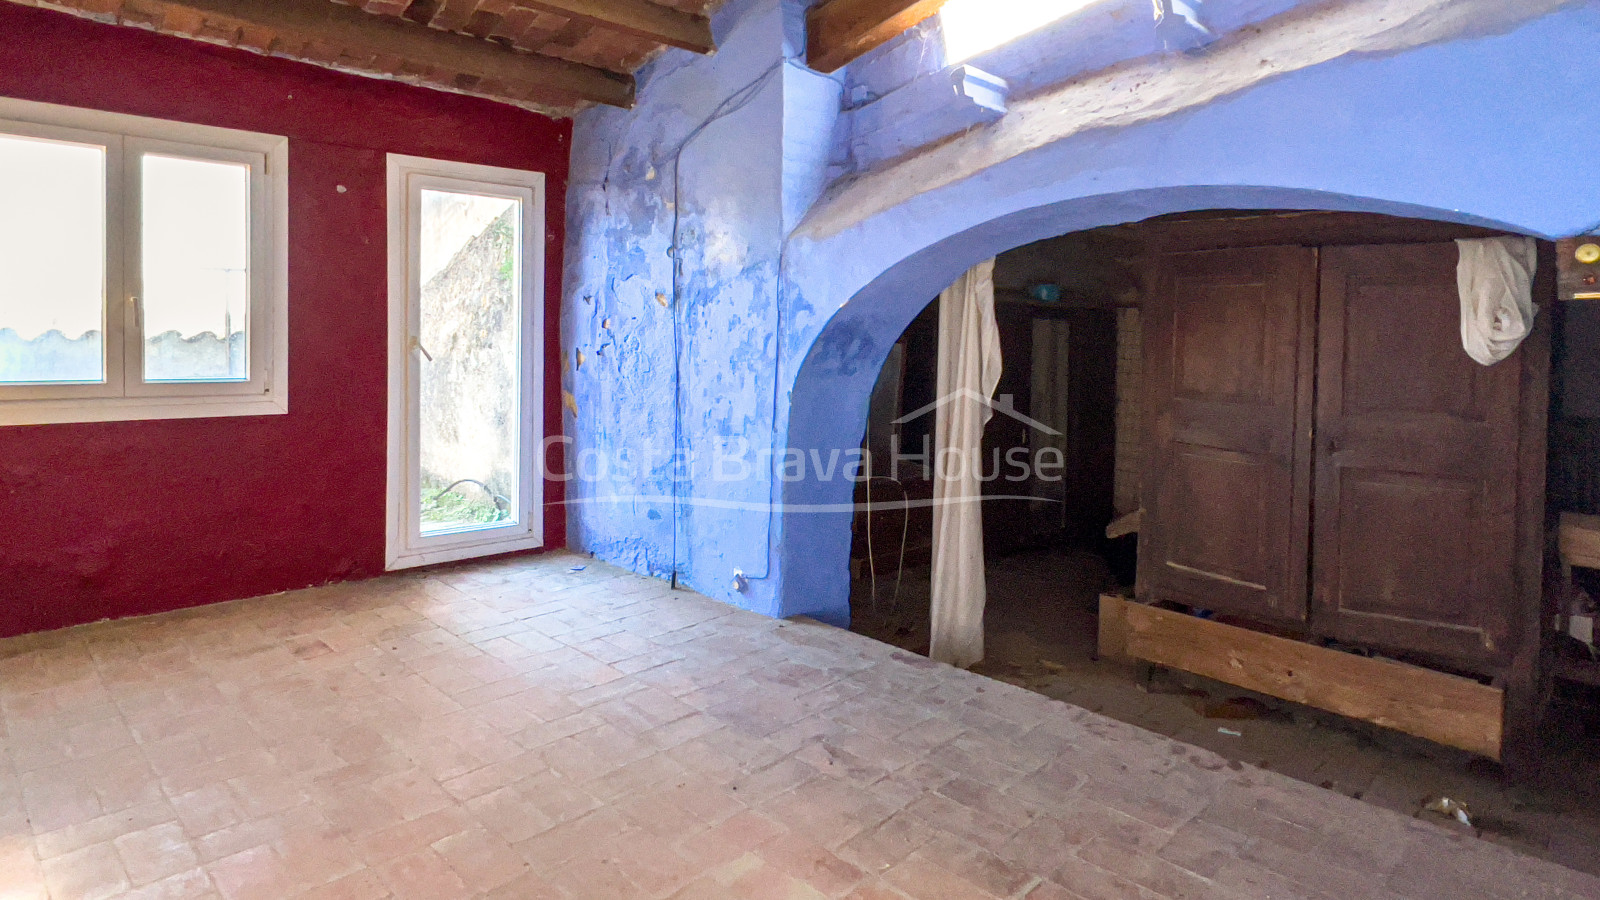 Casa de piedra en venta en Gualta, con patio interior y muchas posibilidades de aprovechamiento